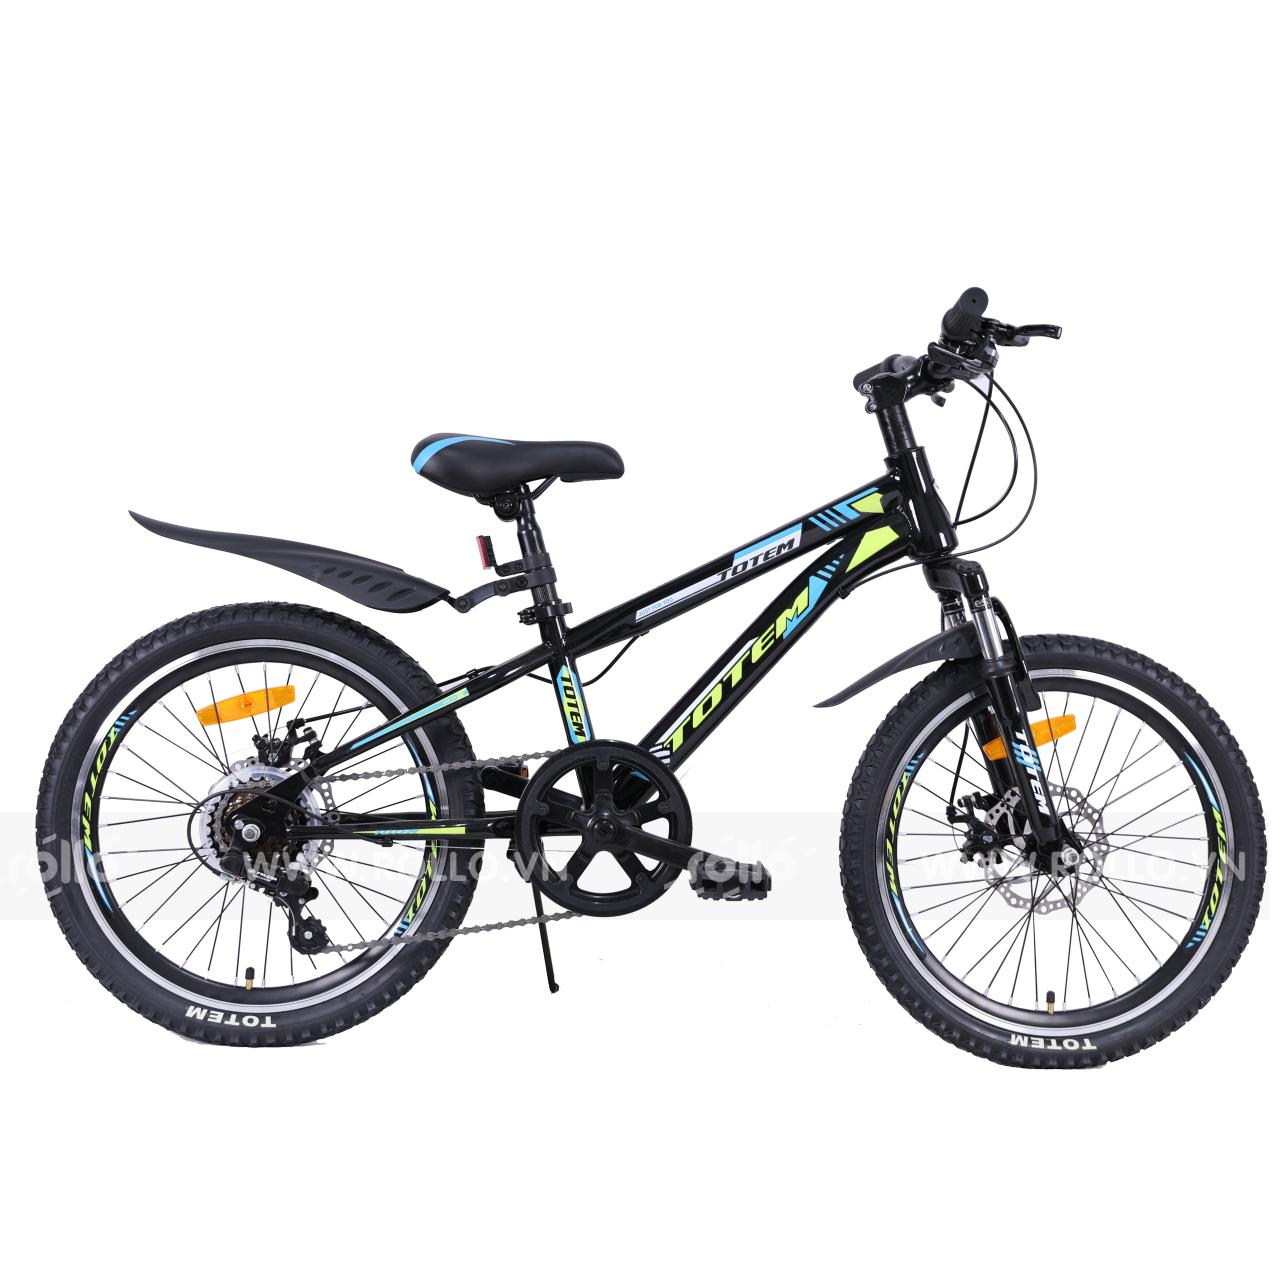 Cung cấp xe đạp trẻ em: Chúng tôi mang đến cho bạn những sản phẩm xe đạp trẻ em chất lượng, an toàn và giá cả phải chăng nhất. Hy vọng sẽ đồng hành cùng gia đình trong những kinh nghiệm tuyệt vời và những khoảnh khắc đáng nhớ với bé yêu.